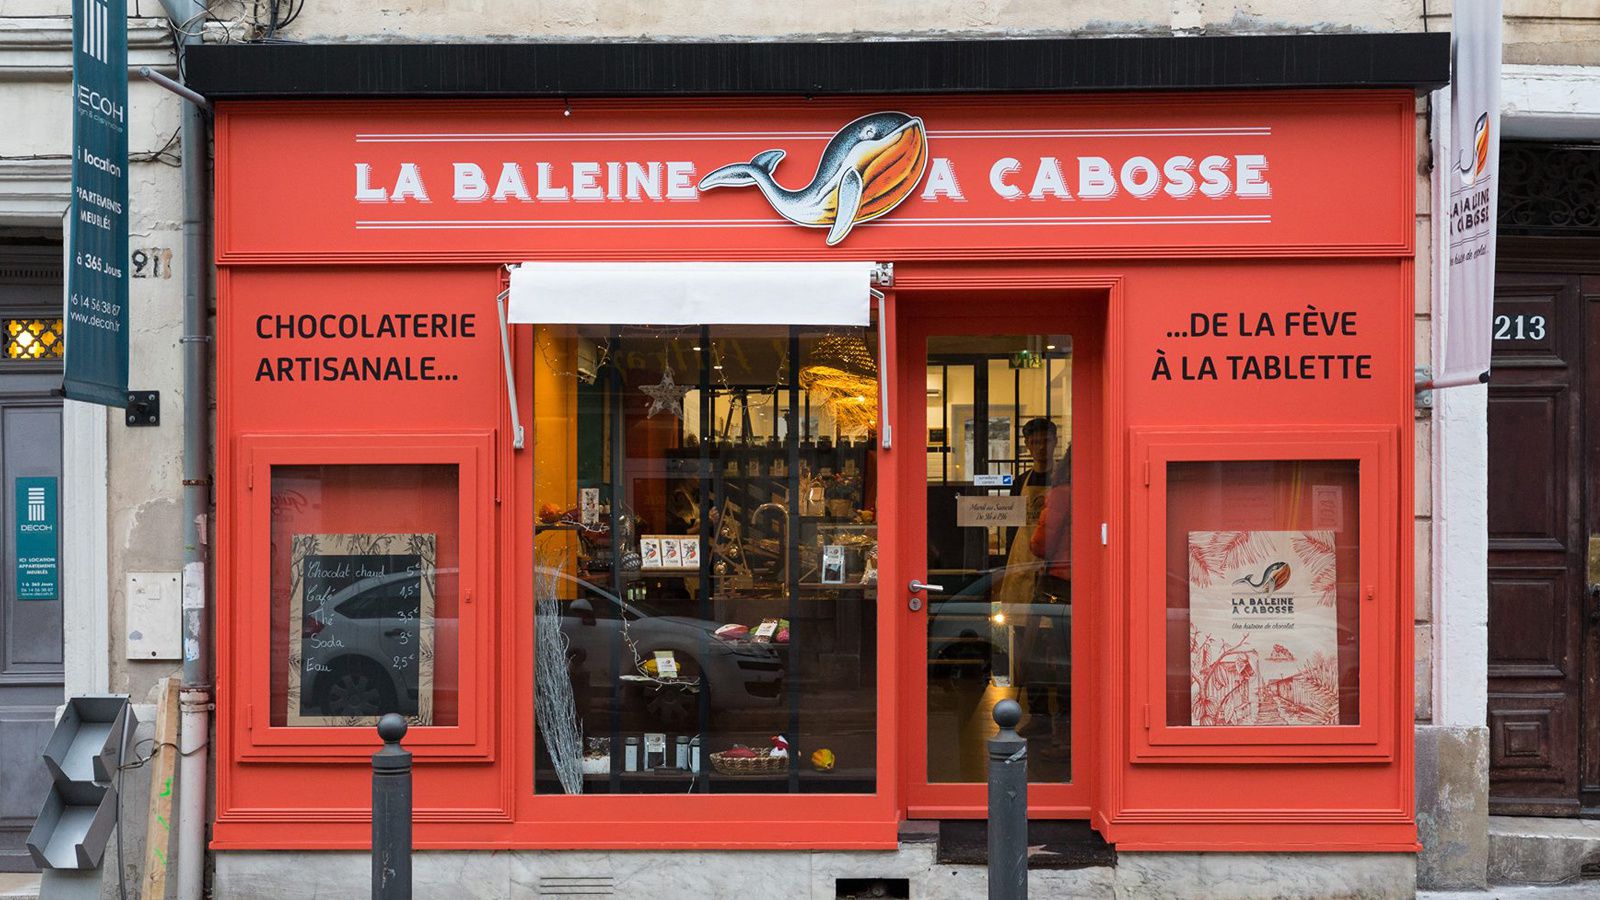 La Baleine à Cabosse (1ère chocolaterie artisanale "bean-to-bar"/"de la fève à la tablette" de Marseille) I Design : 2S Global Design, Marseille, France (avril 2018)